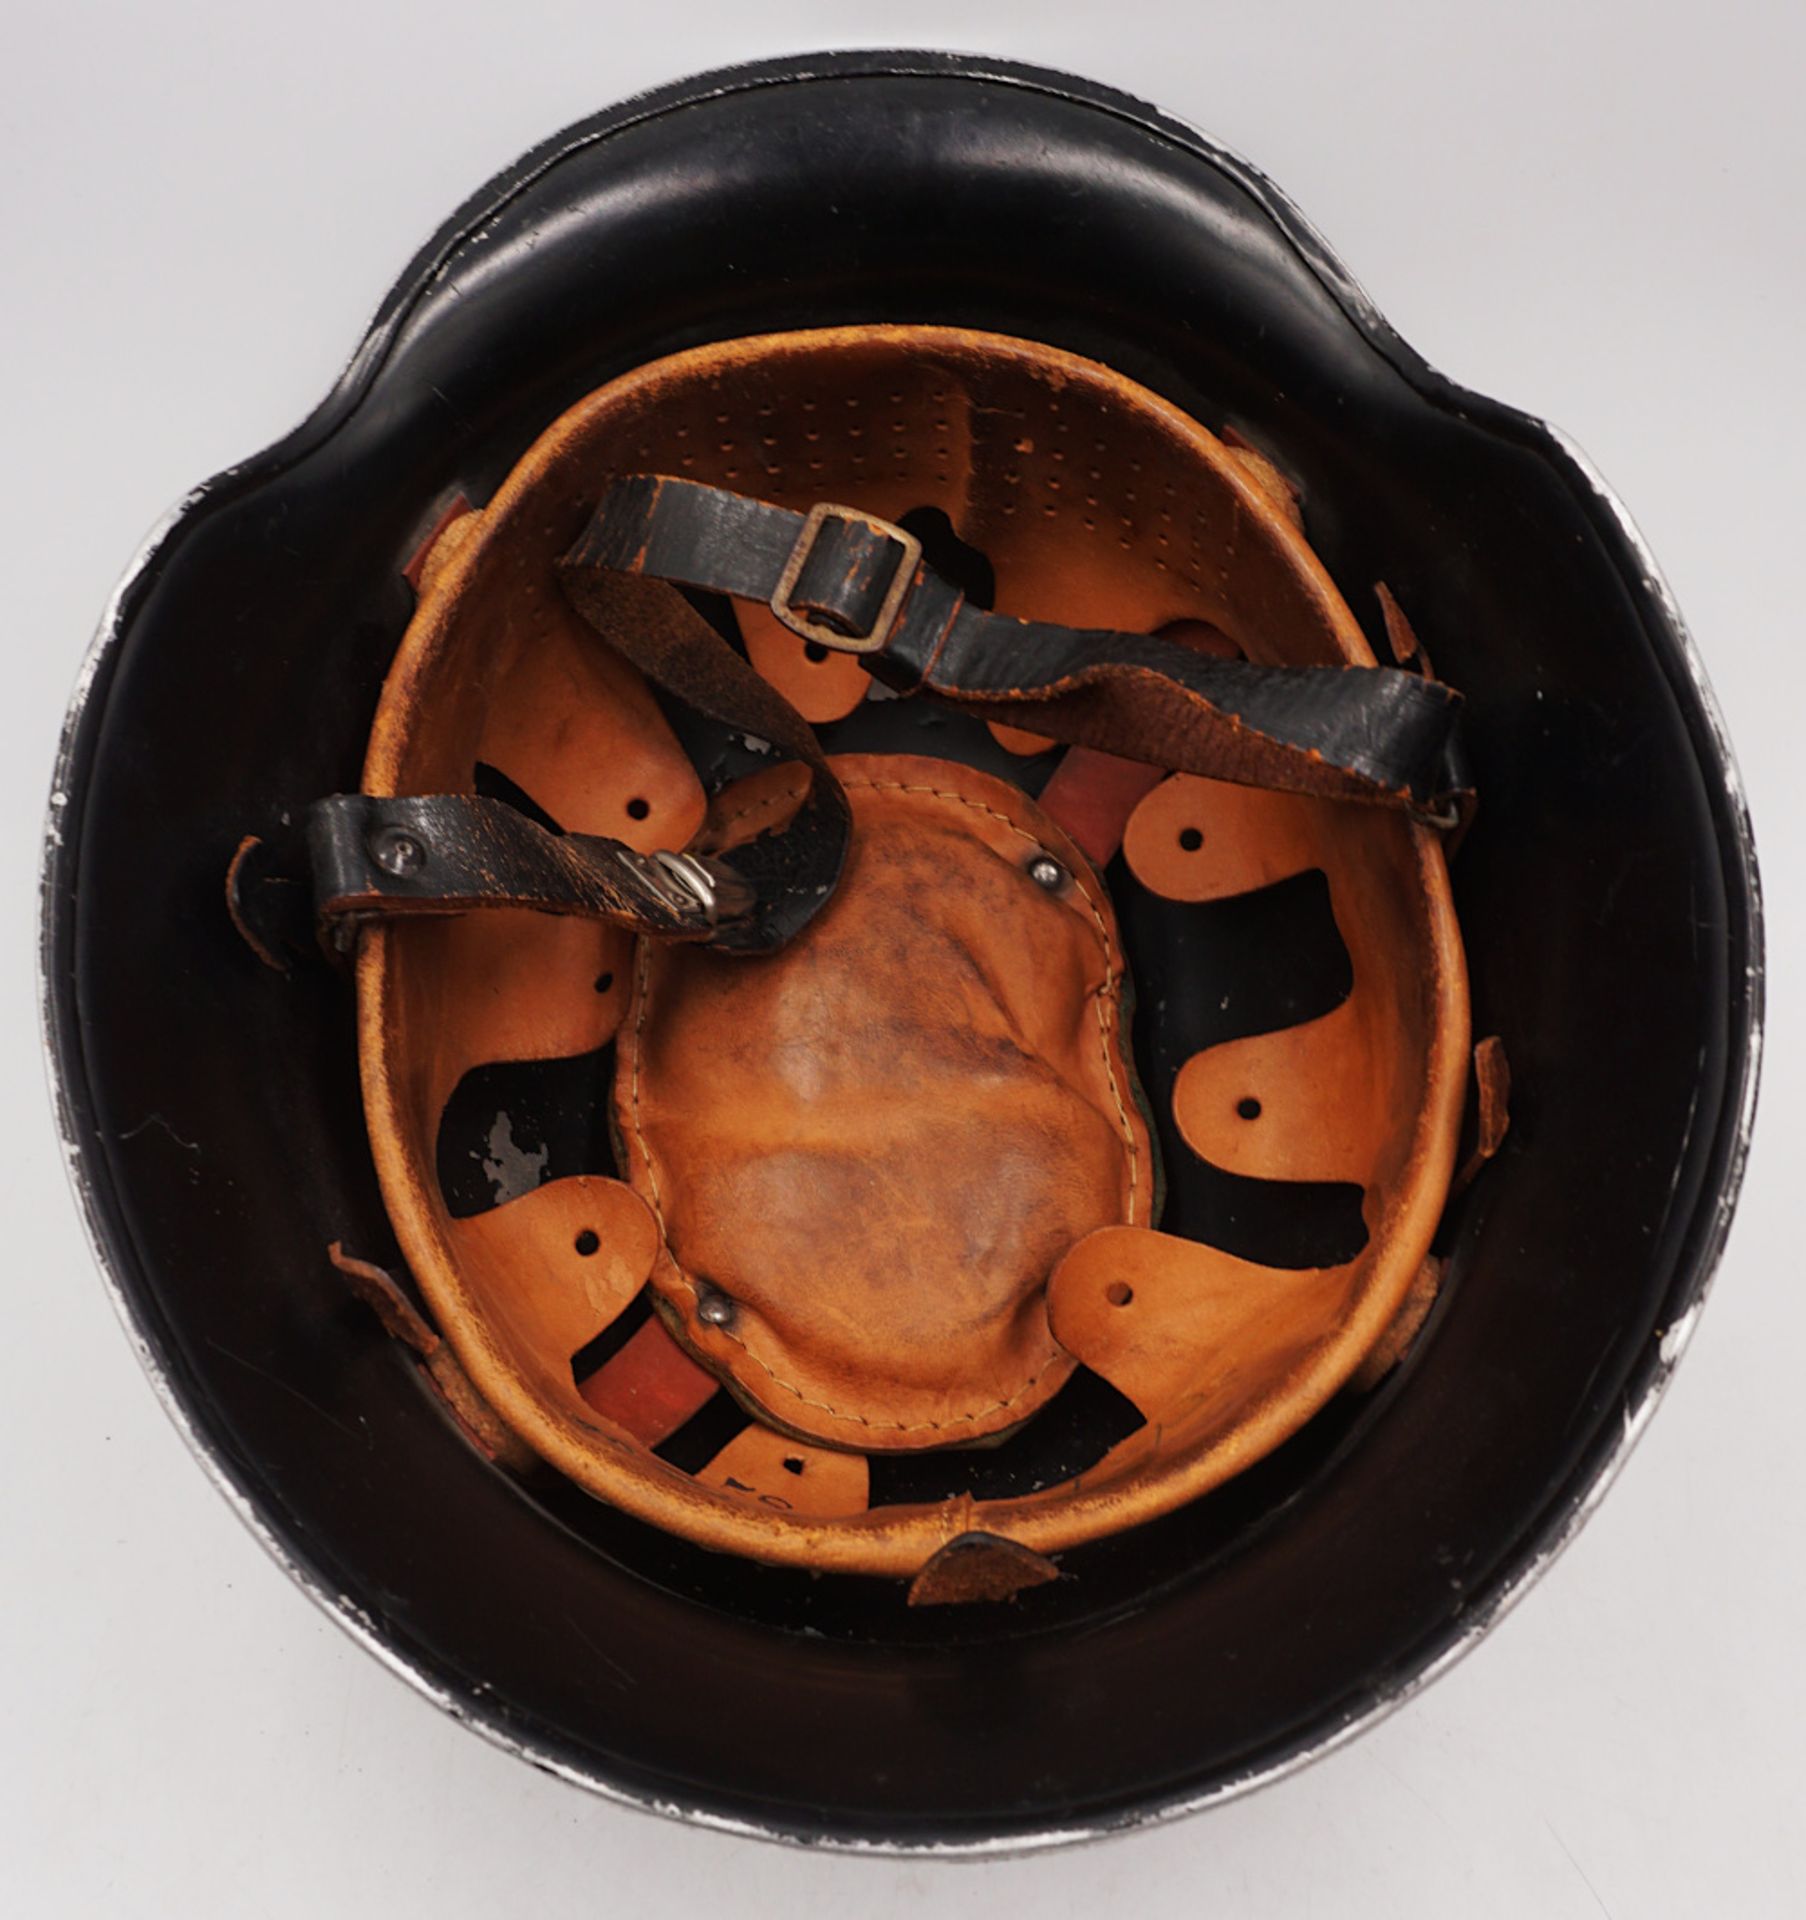 1 Feuerwehrhelm wohl um 1940 schwarz lackiert Ledereinsatz min. besch., H ca. 15cm sow - Image 3 of 4